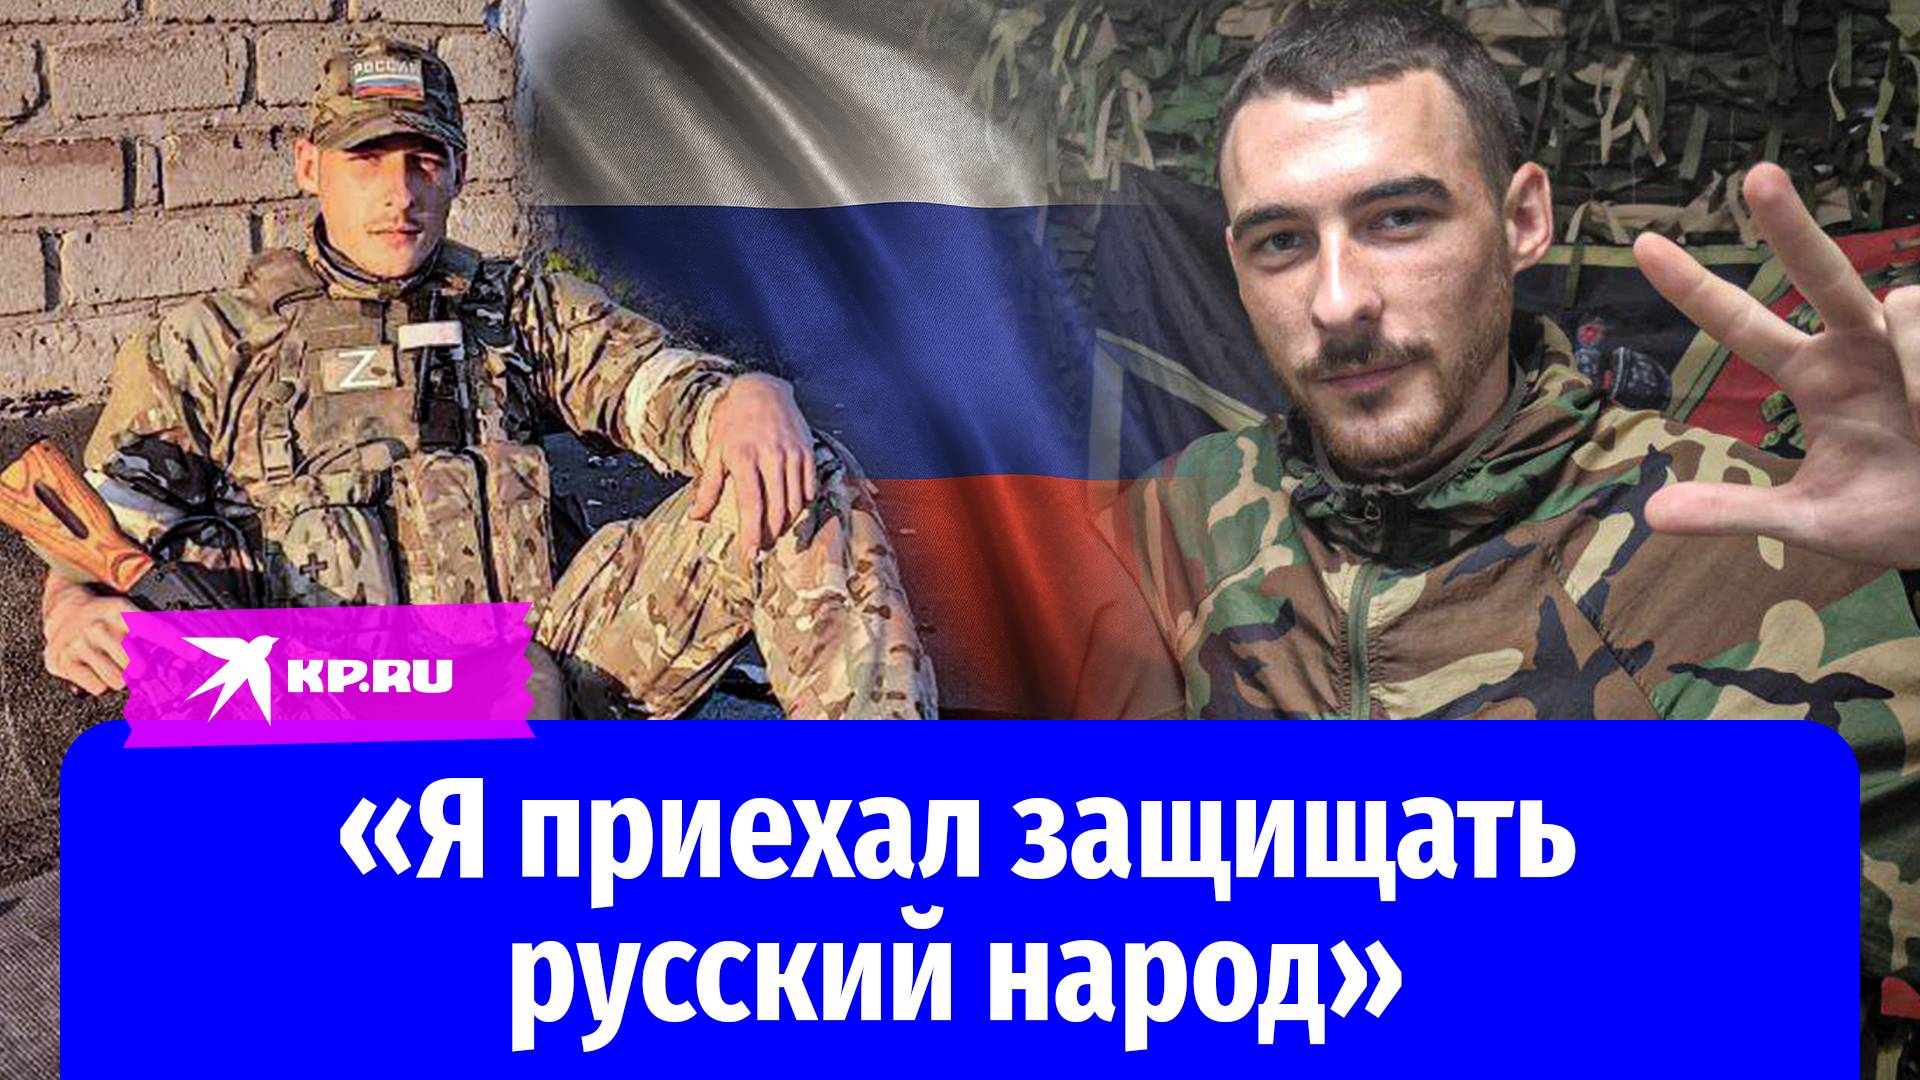 Доброволец из Сербии Александр Йокич получил гражданство России